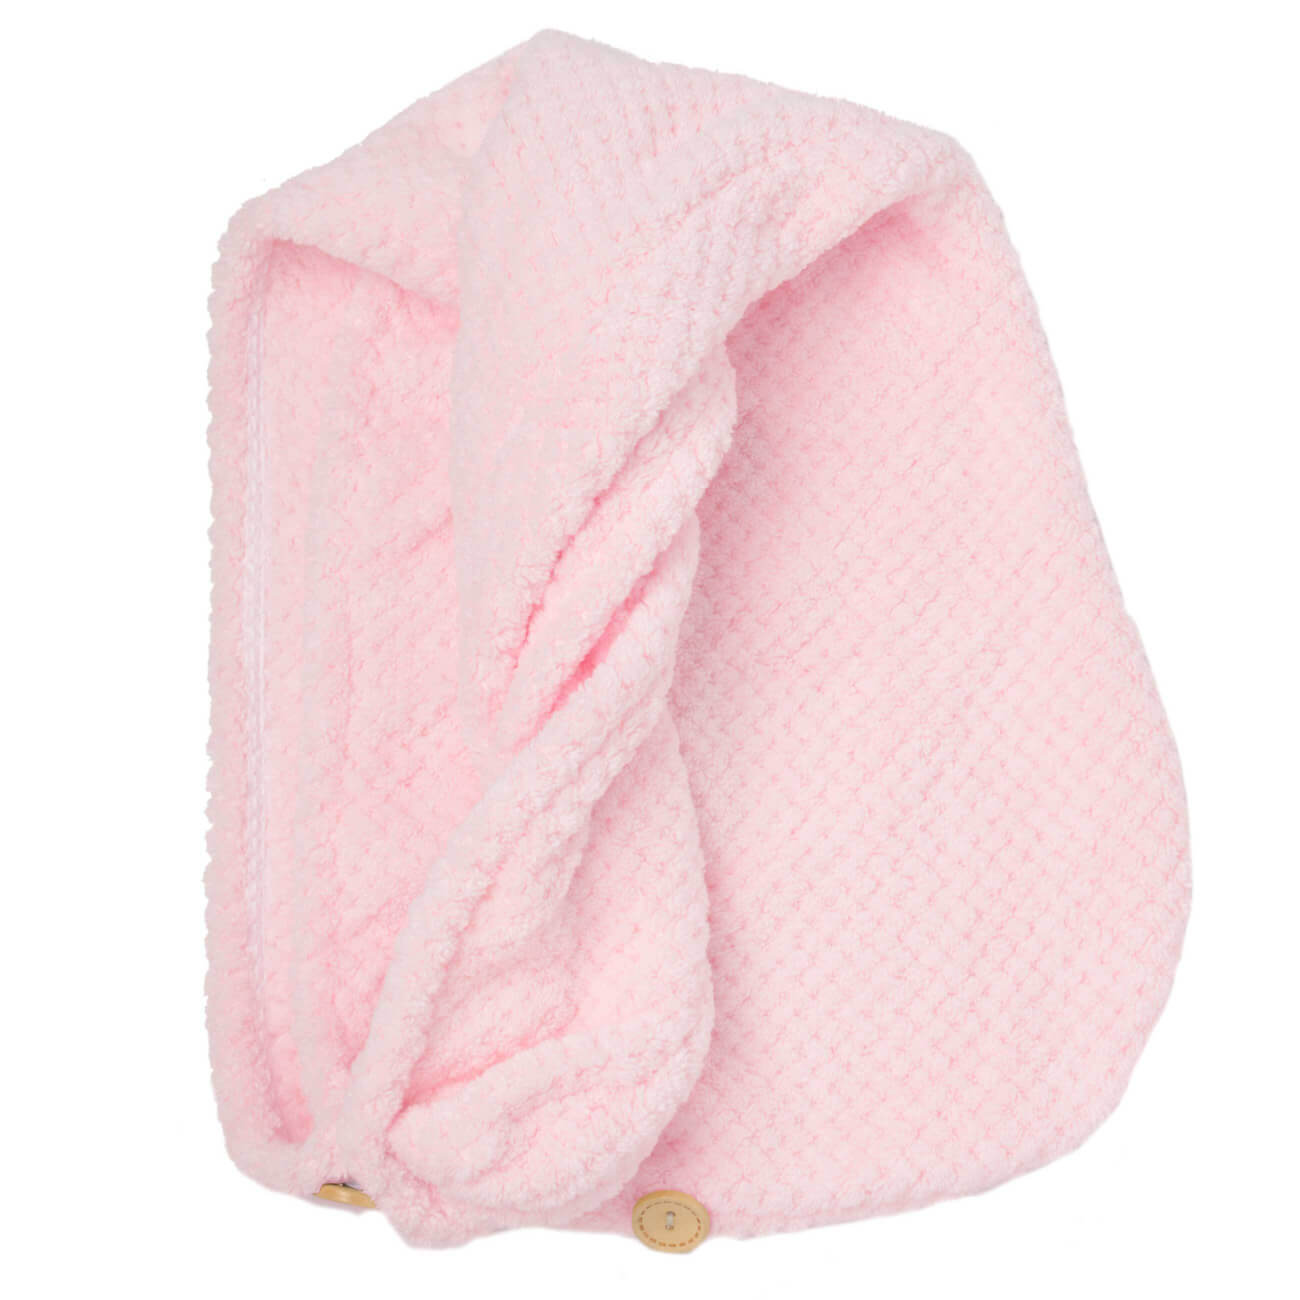 Полотенце-тюрбан для волос, 62х24 см, микроволокно, розовое, Fiber spa полотенце xiaomi zsh vpai joint series 130 65 розовое